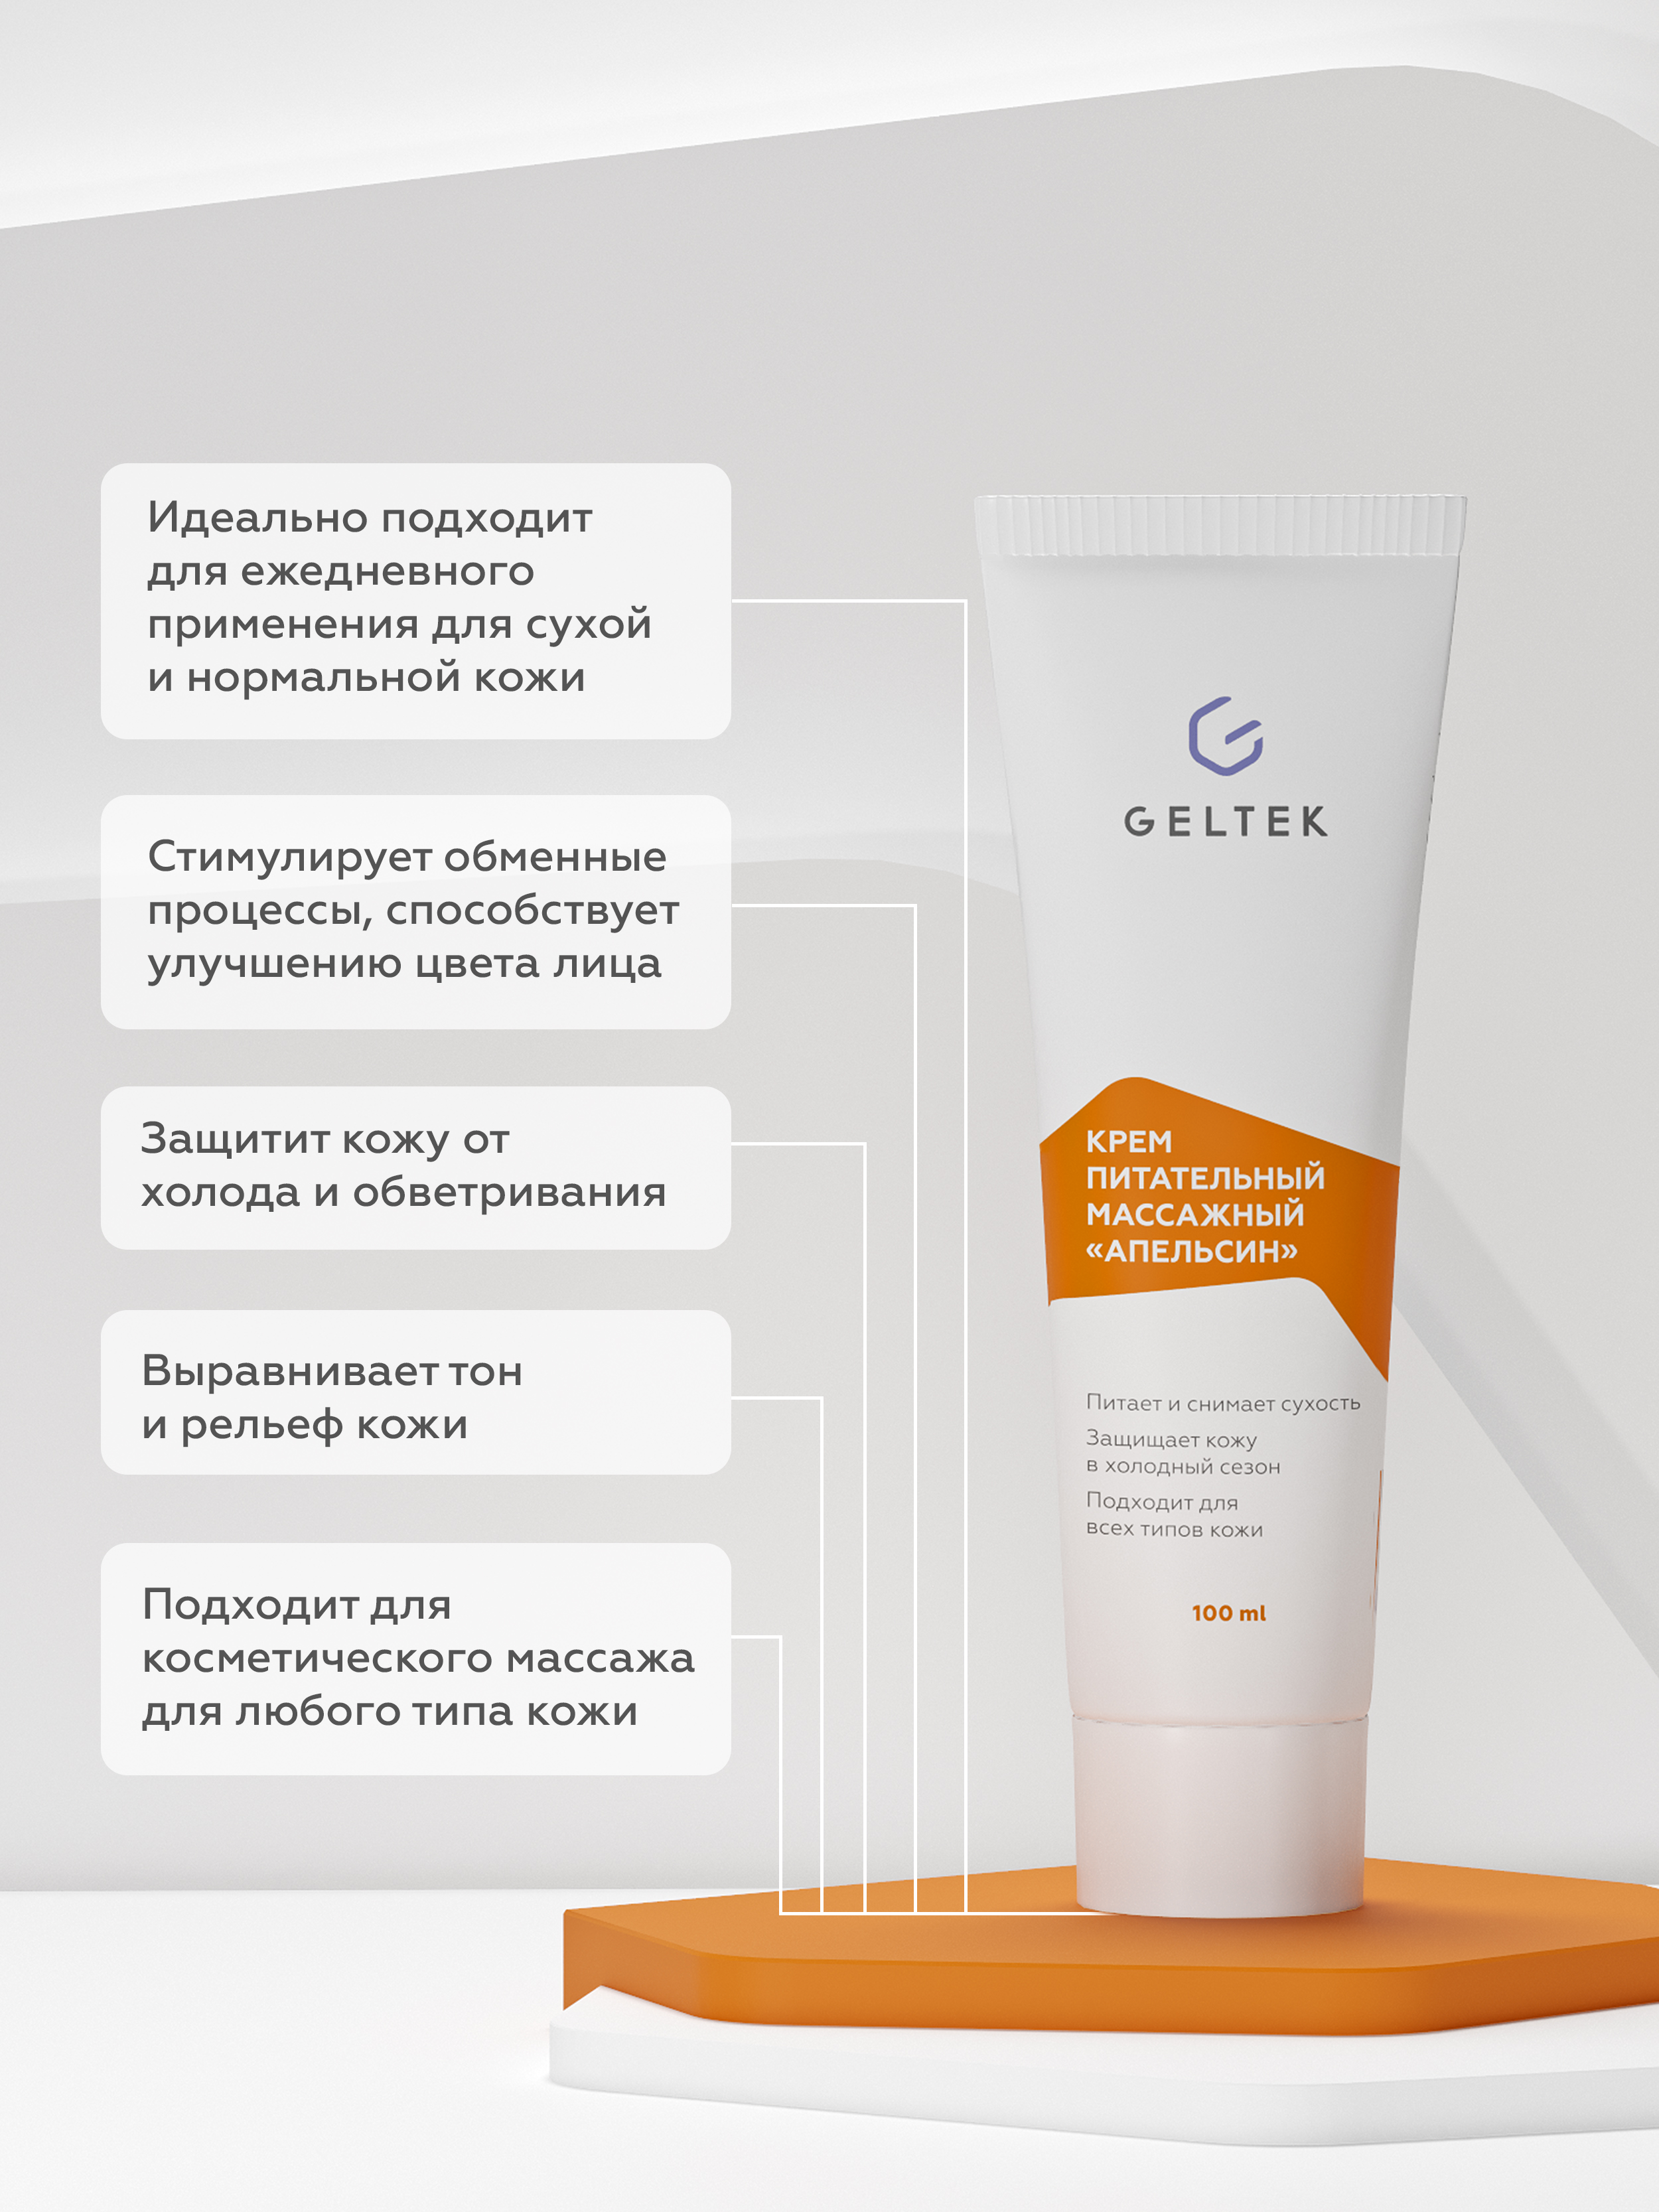 Крем для лица и тела Geltek Апельсин питательный массажный 100мл - в интернет-магазине tut-beauty.by